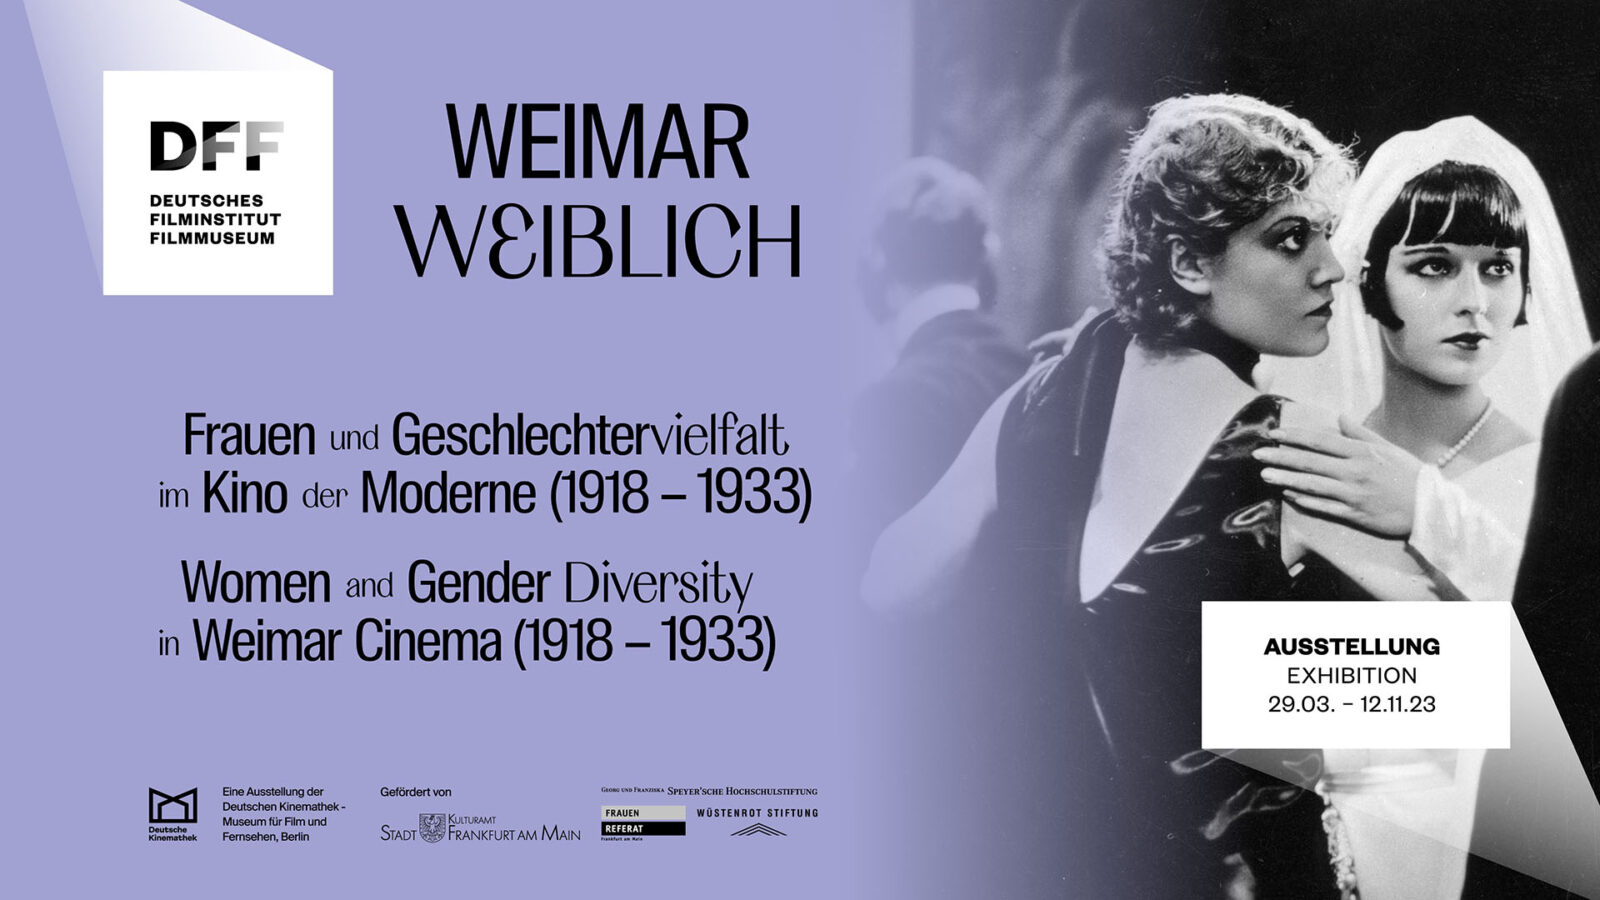 Keyvisual der Ausstellung Weimar weiblich